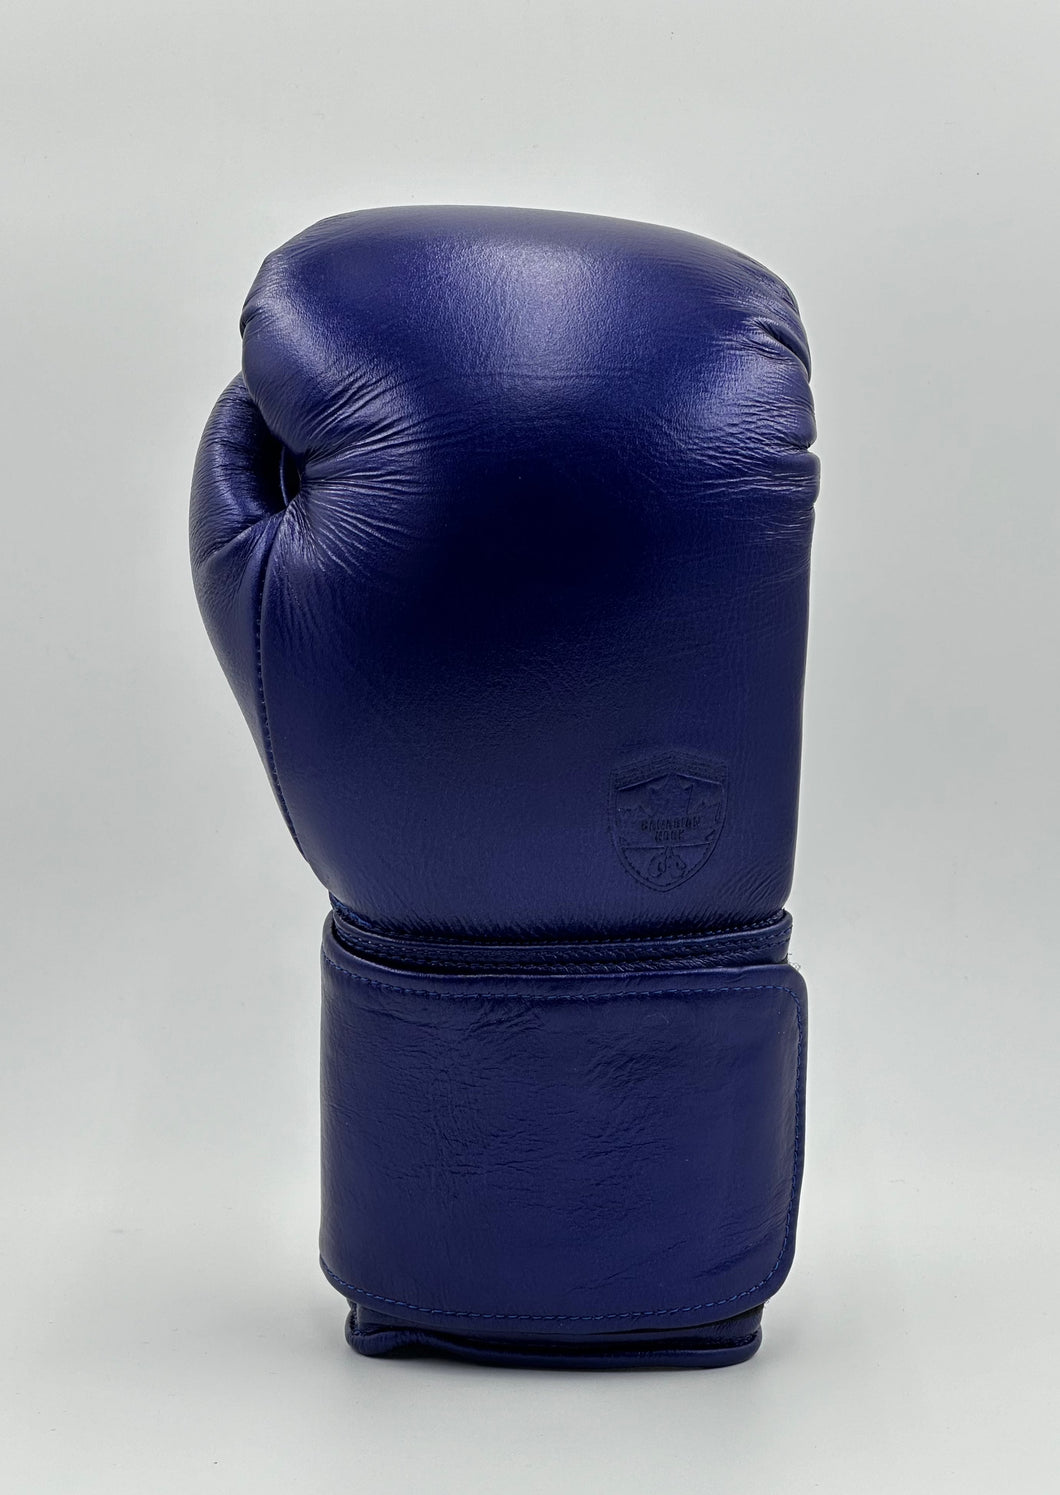 G12000 Boxing Gloves - METALLIC BLUE